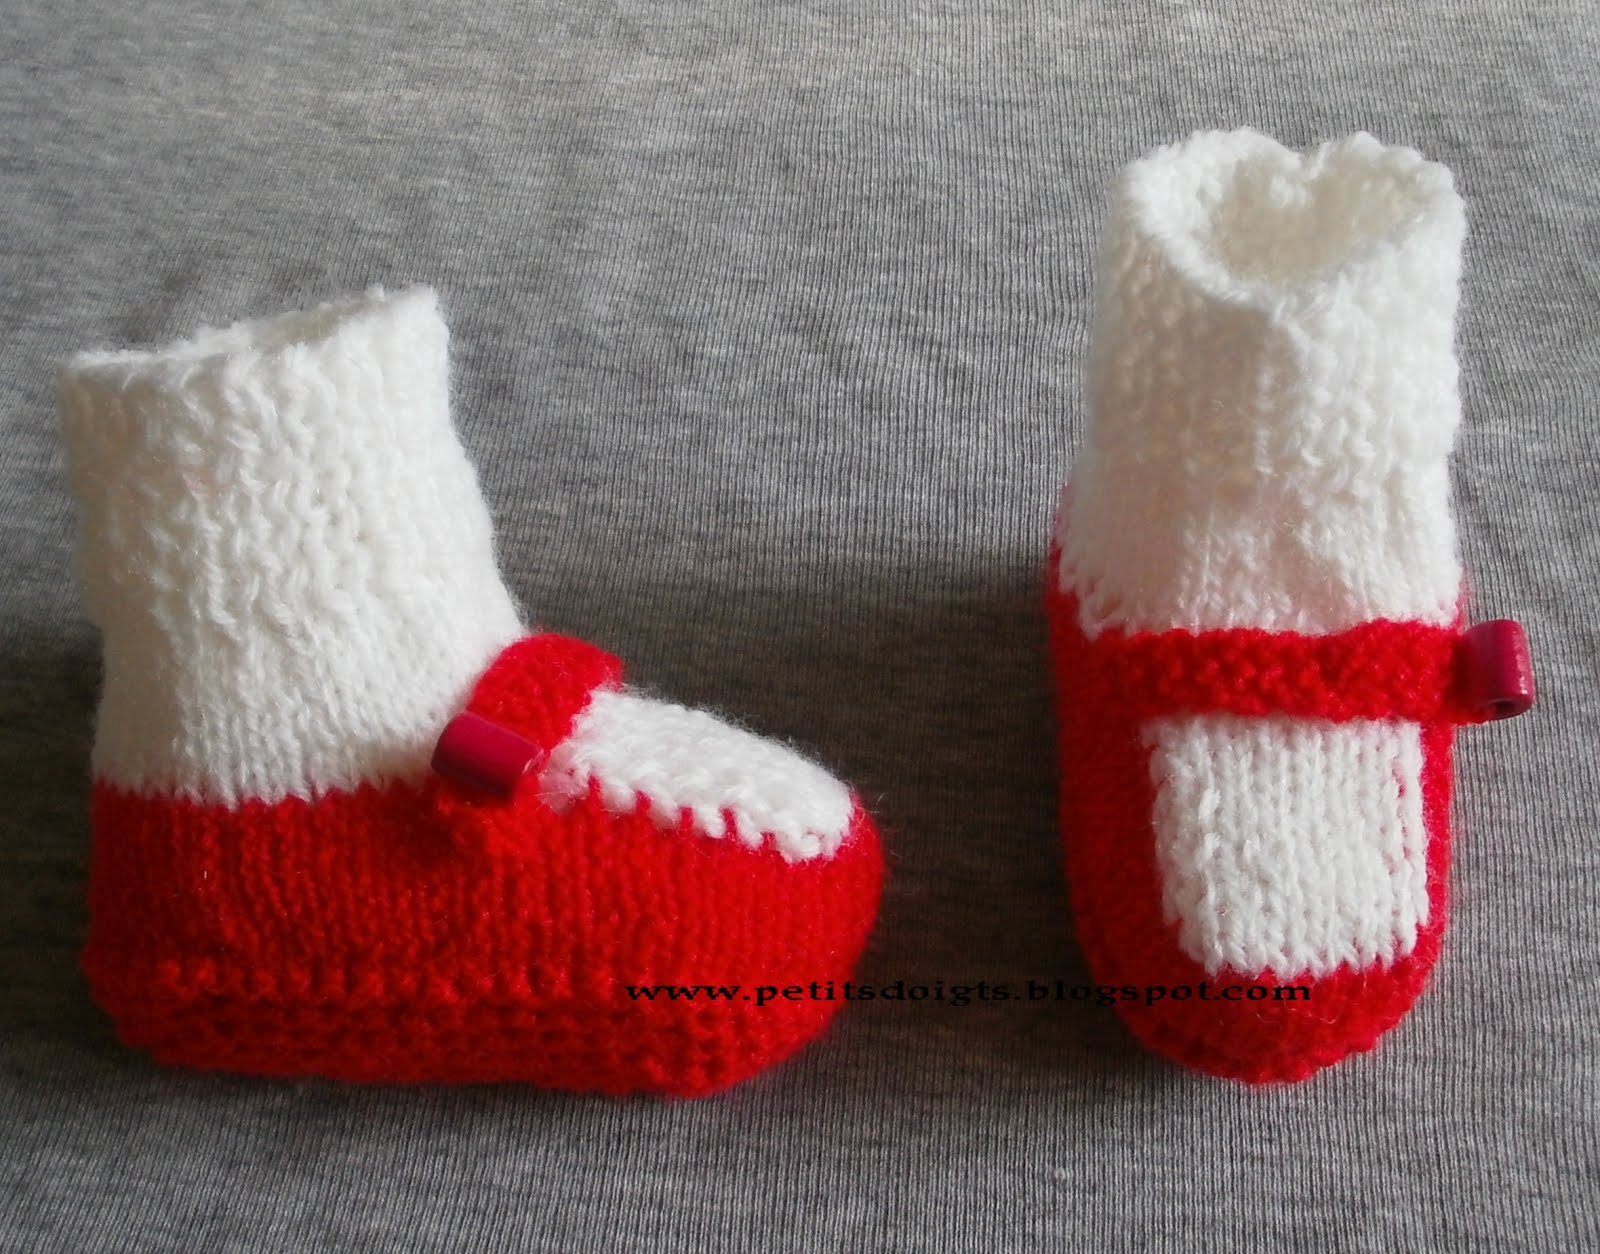 Petits doigts: Chausson bébé chausson-chaussette modèle 15